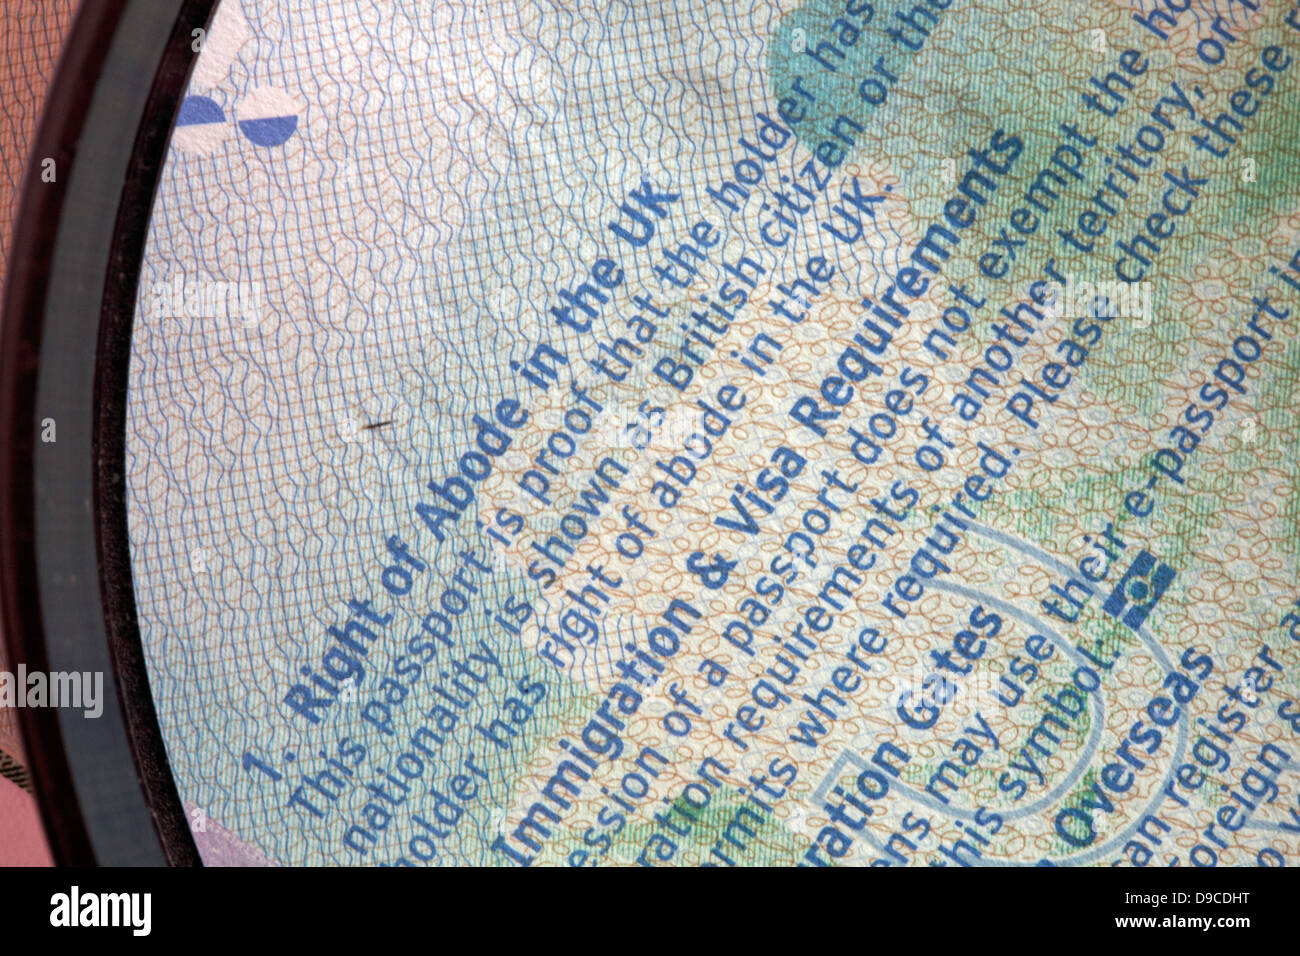 Vergrößerungsglas Lesen rechts von Aufenthalt in Großbritannien Abschnitt Der Notizen im britischen Reisepass Stockfoto